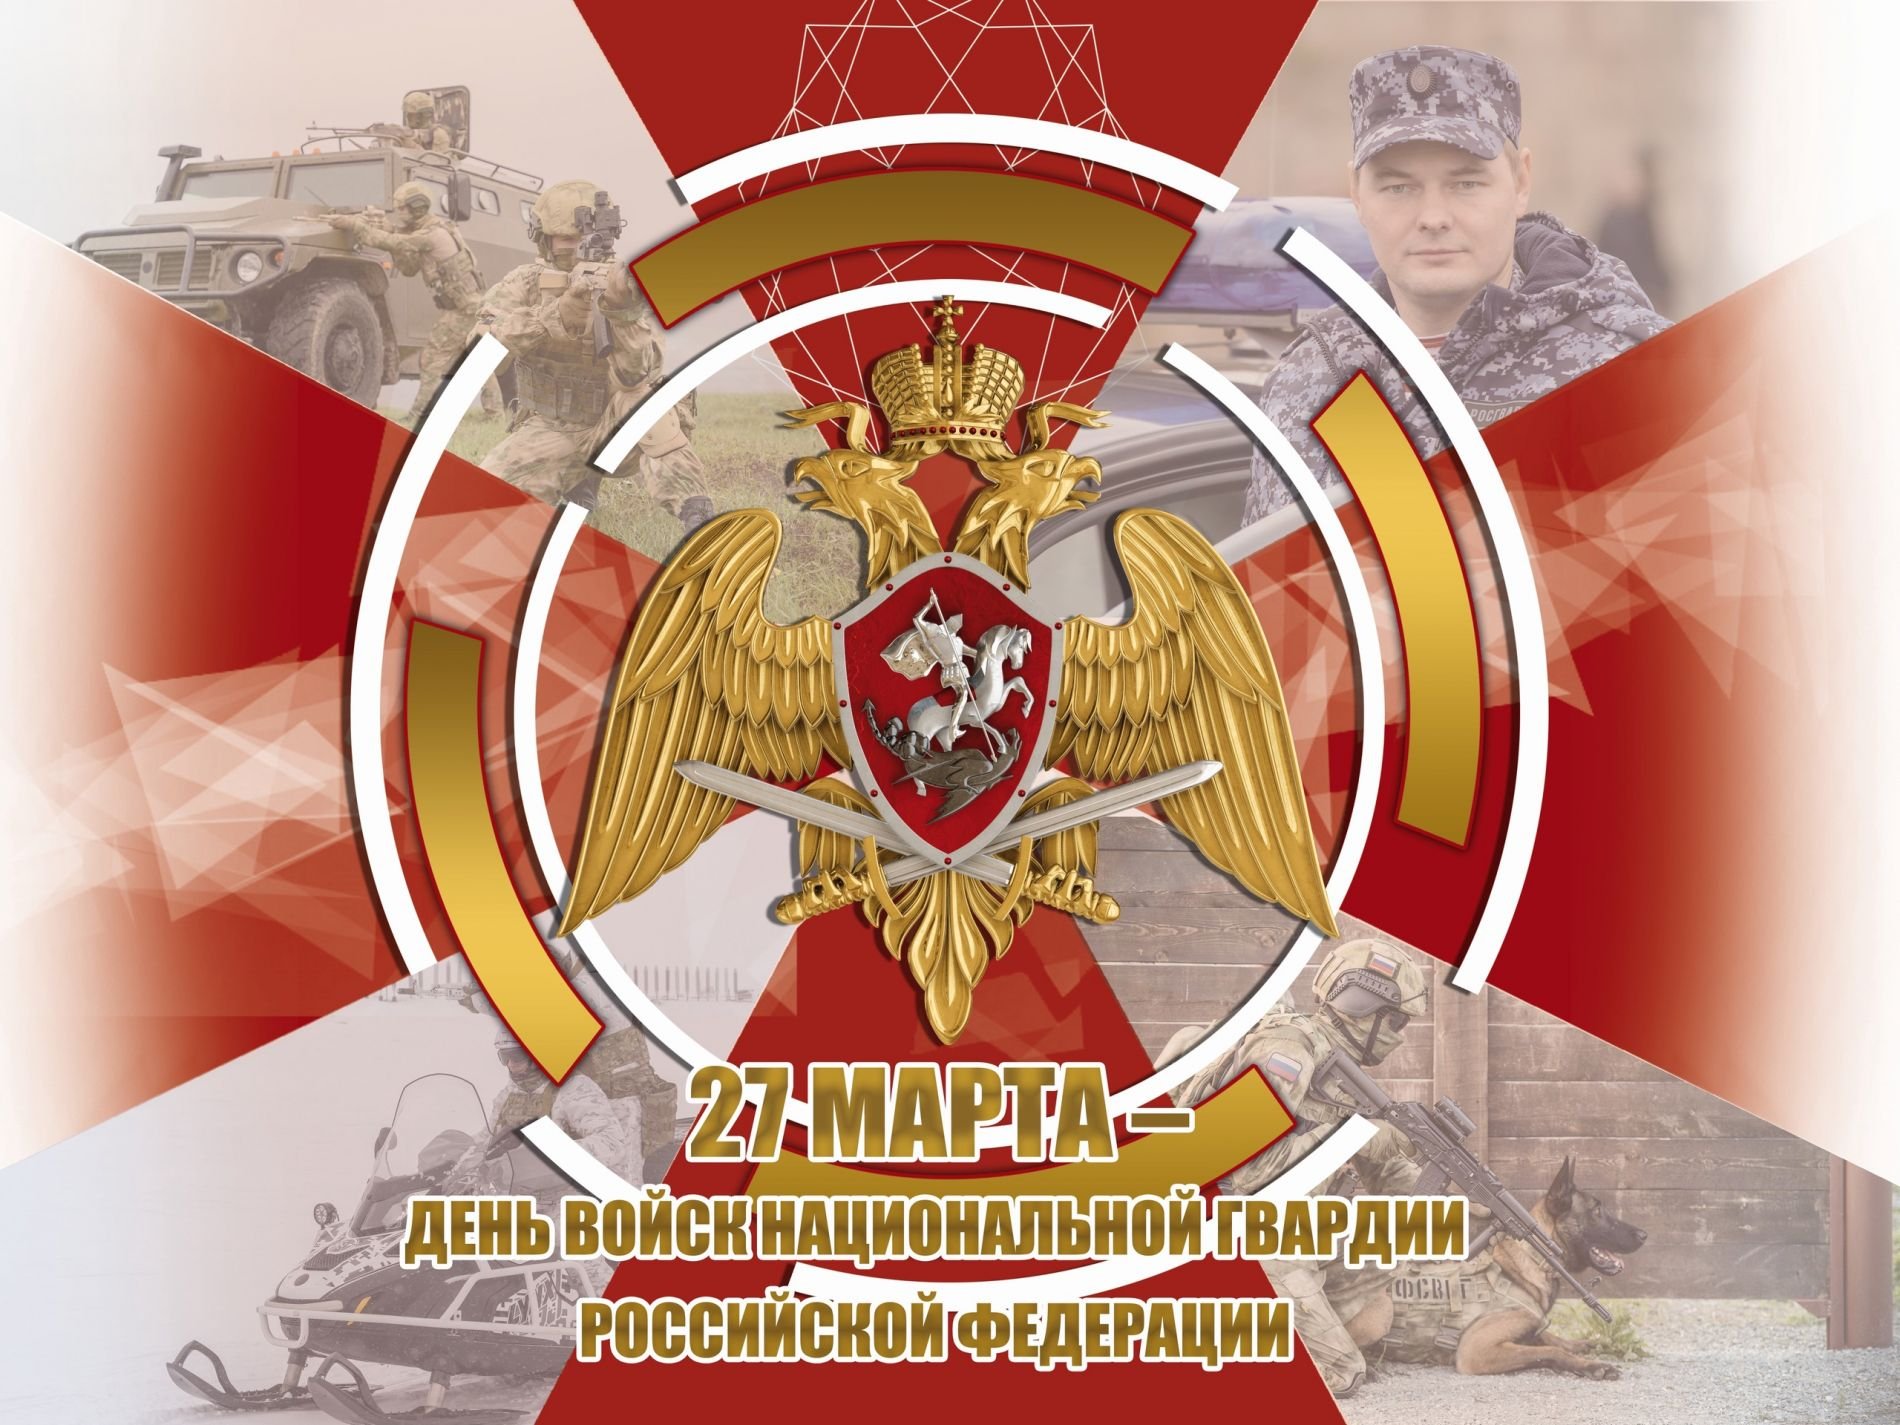 Уважаемые военнослужащие, сотрудники и ветераны войск национальной гвардии Качугского района, поздравляем Вас с профессиональным праздником!